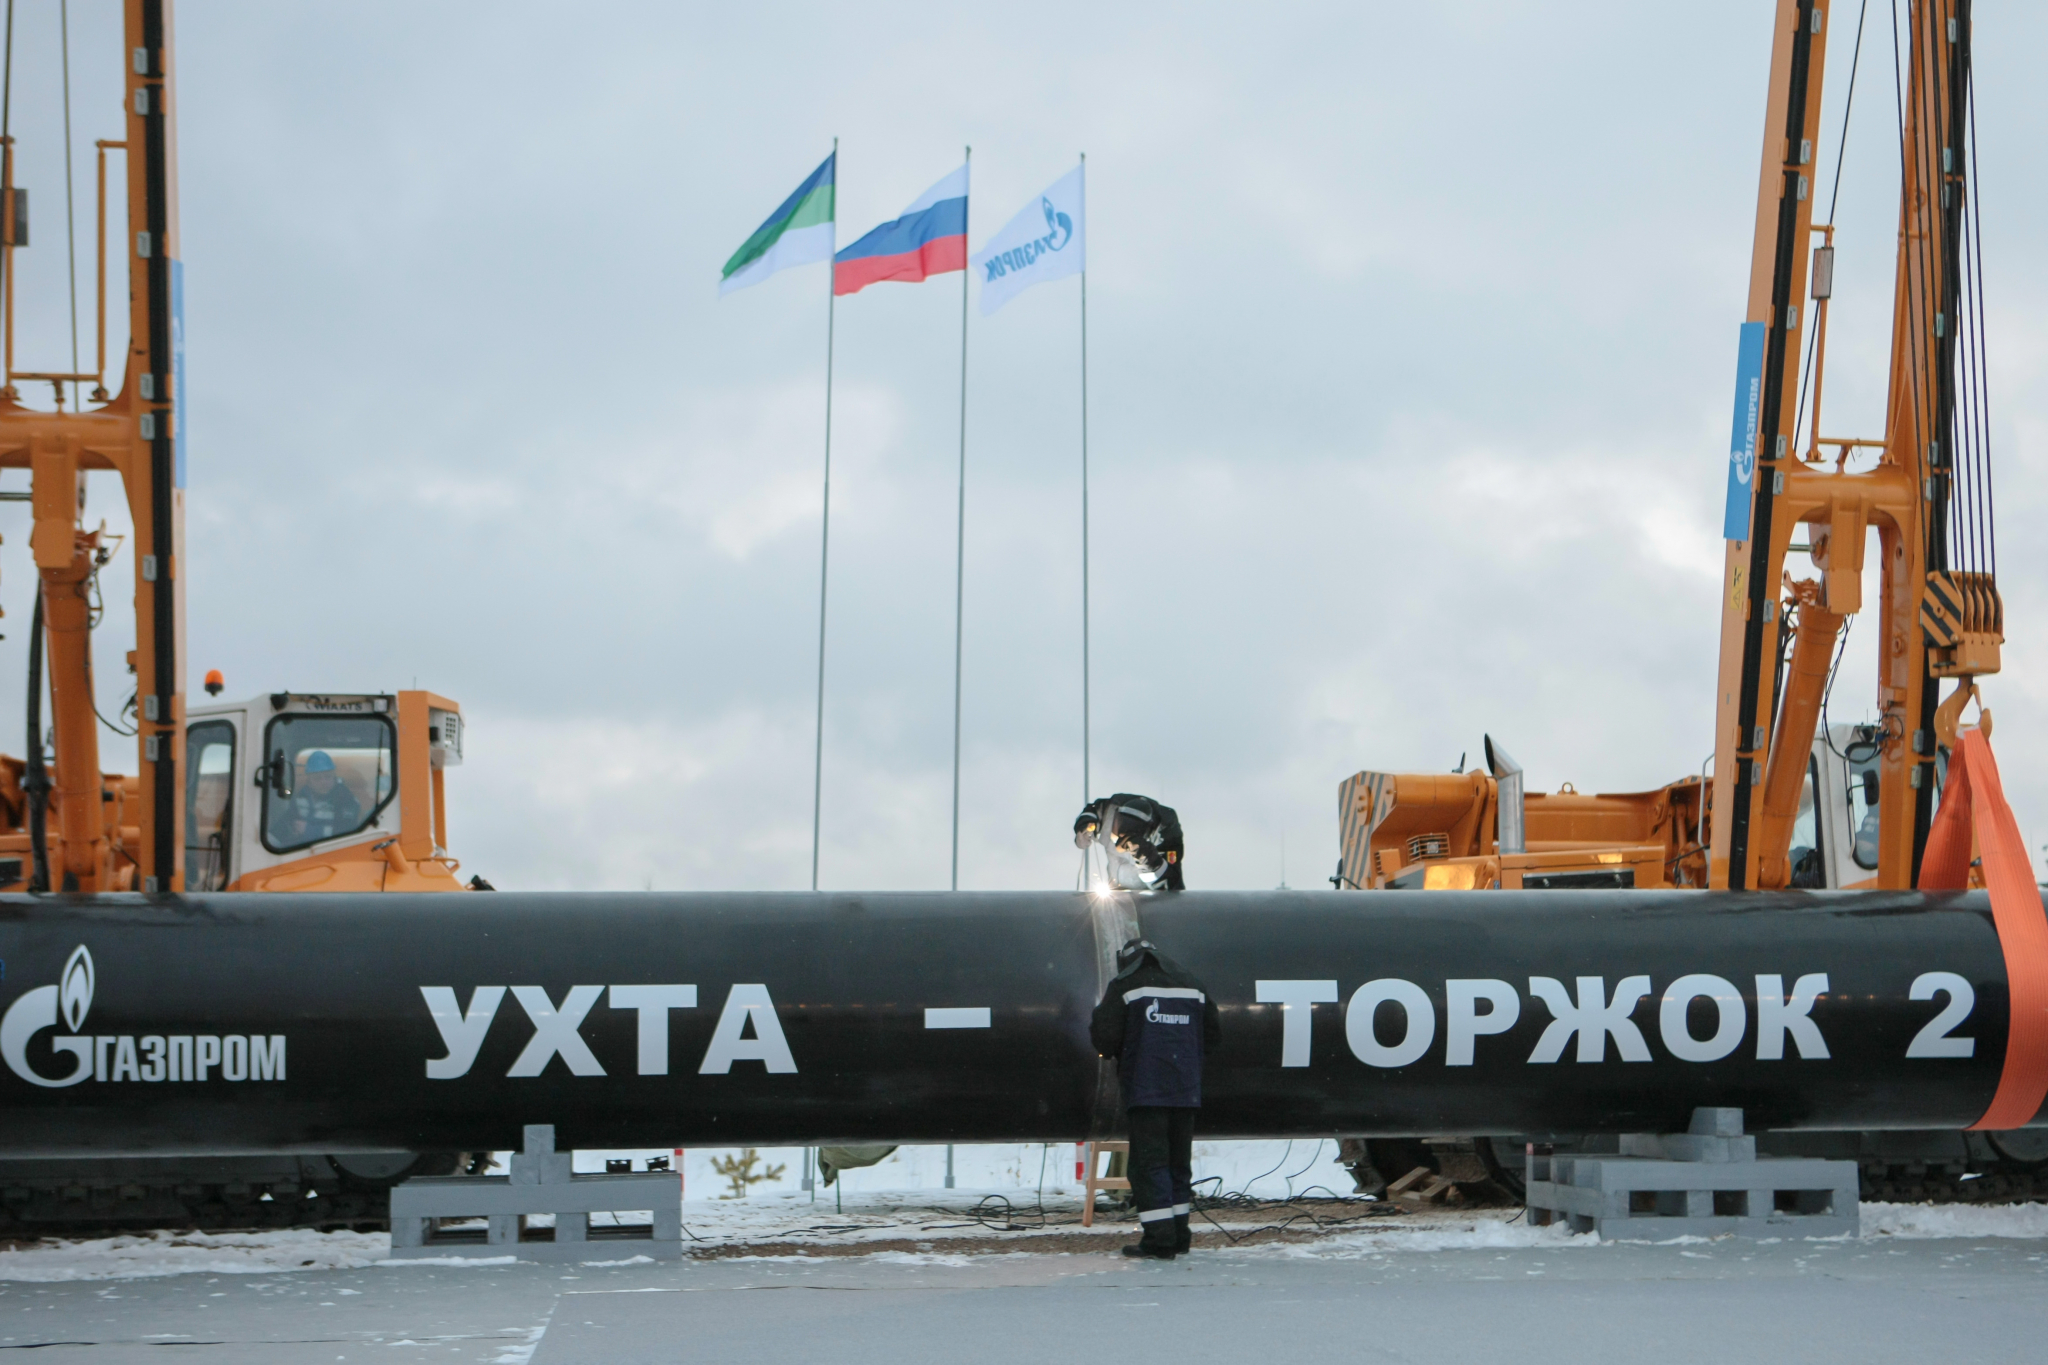 Стало известно, что принесет Коми запуск газопровода “Ухта - Торжок 2”